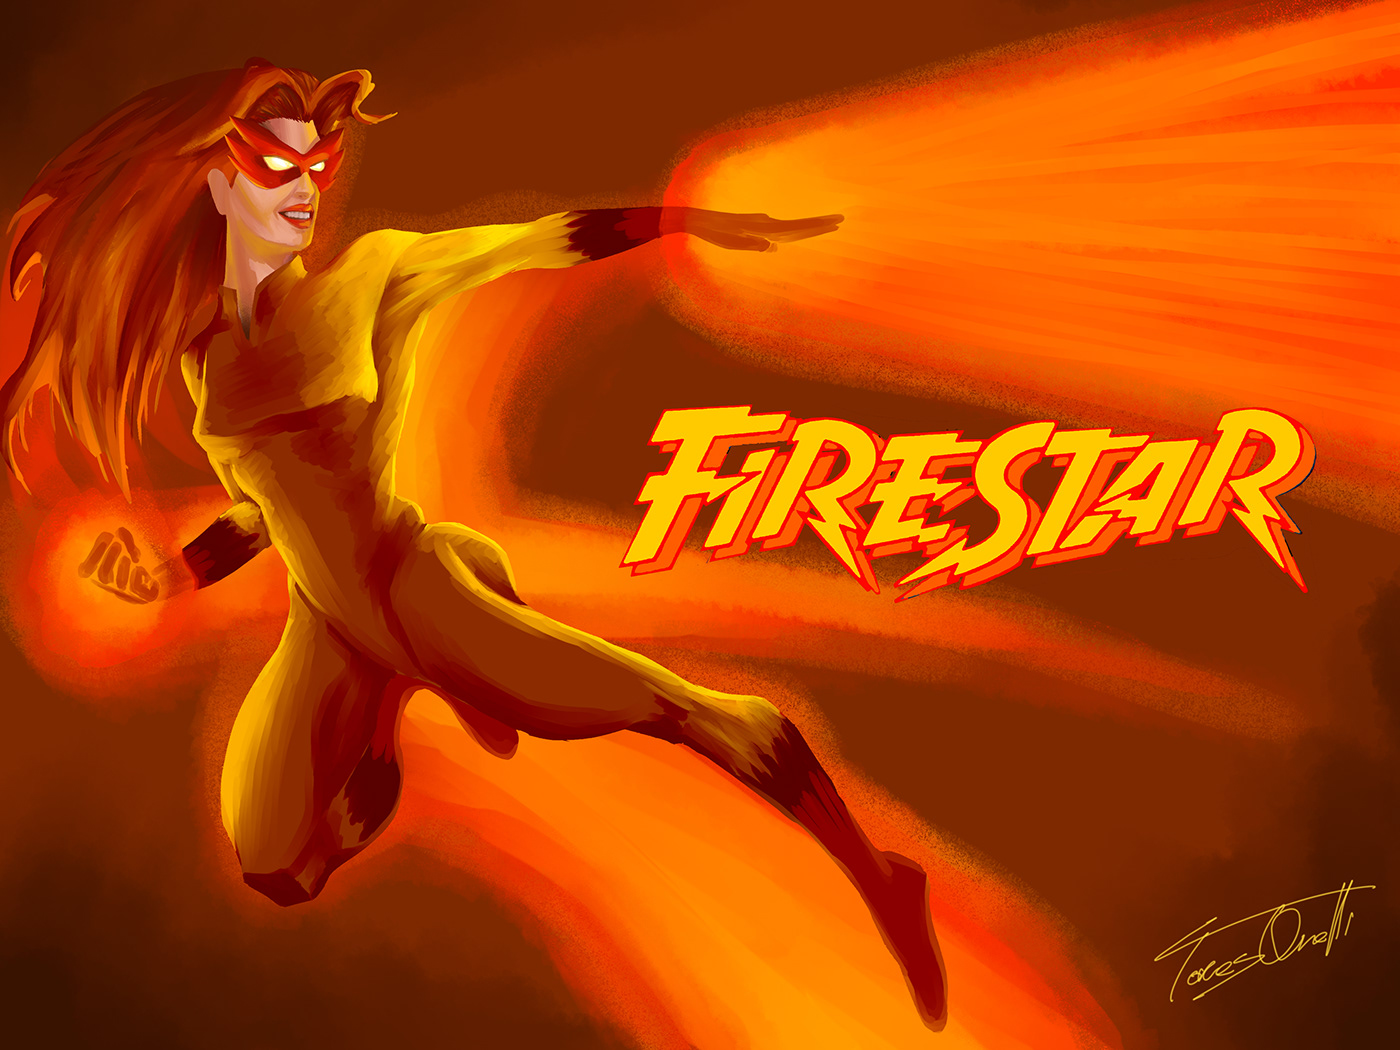 boardgame Firestar Justice marvel namorita NEW warriors Night thrasher Nova speedball digital painting